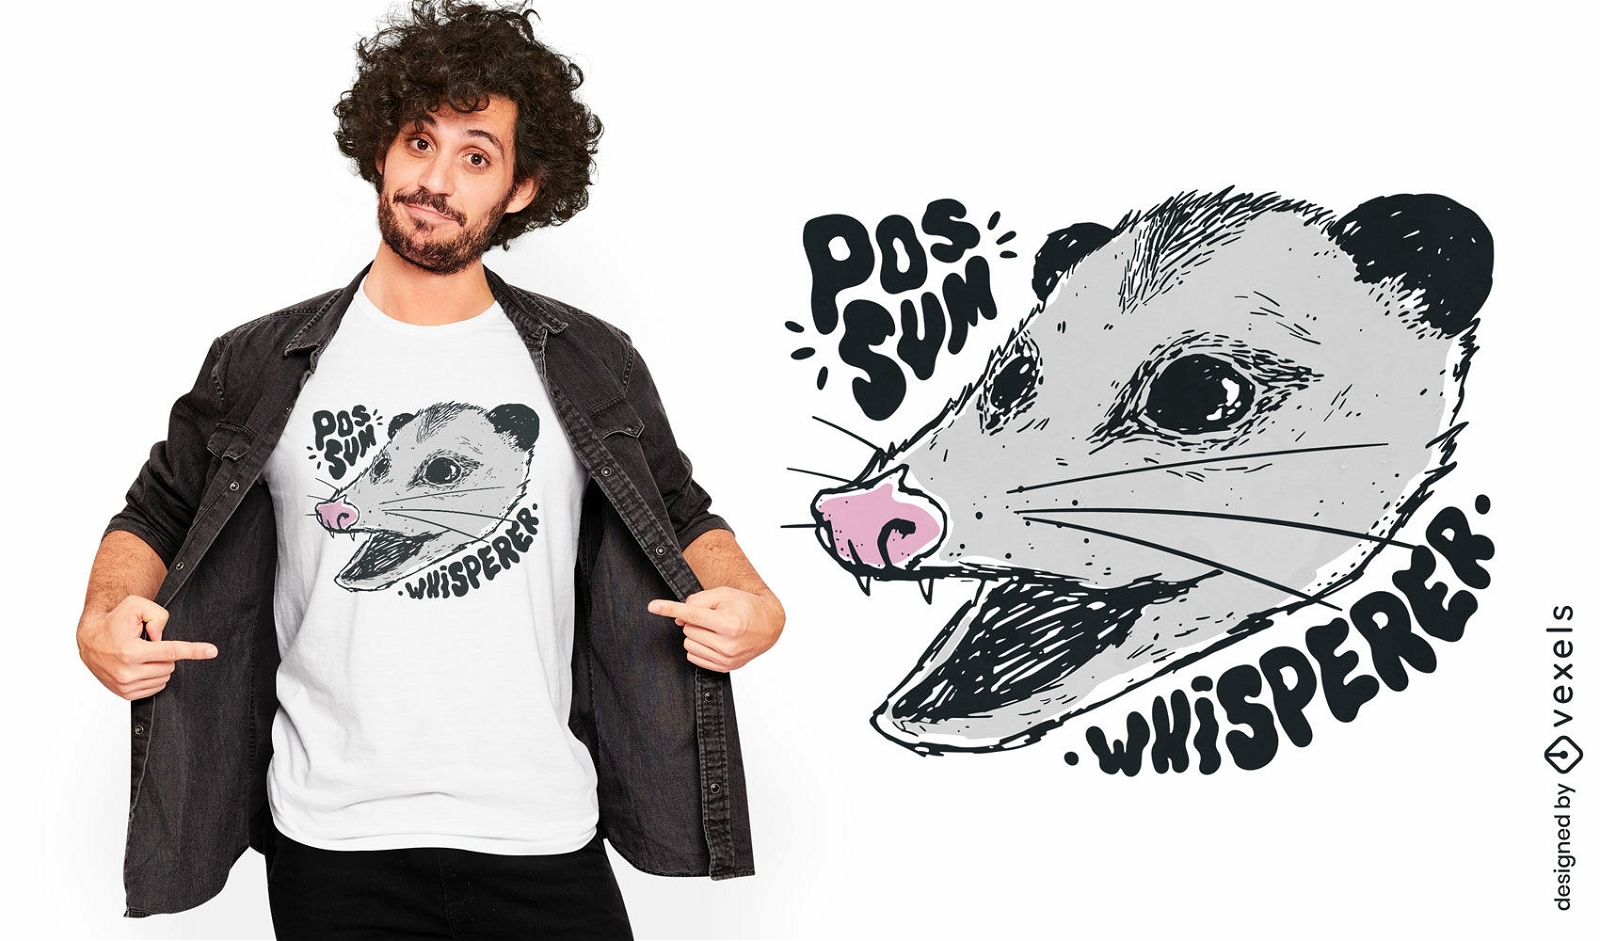 Opossum-Fl?sterer-Zitat-T-Shirt-Design